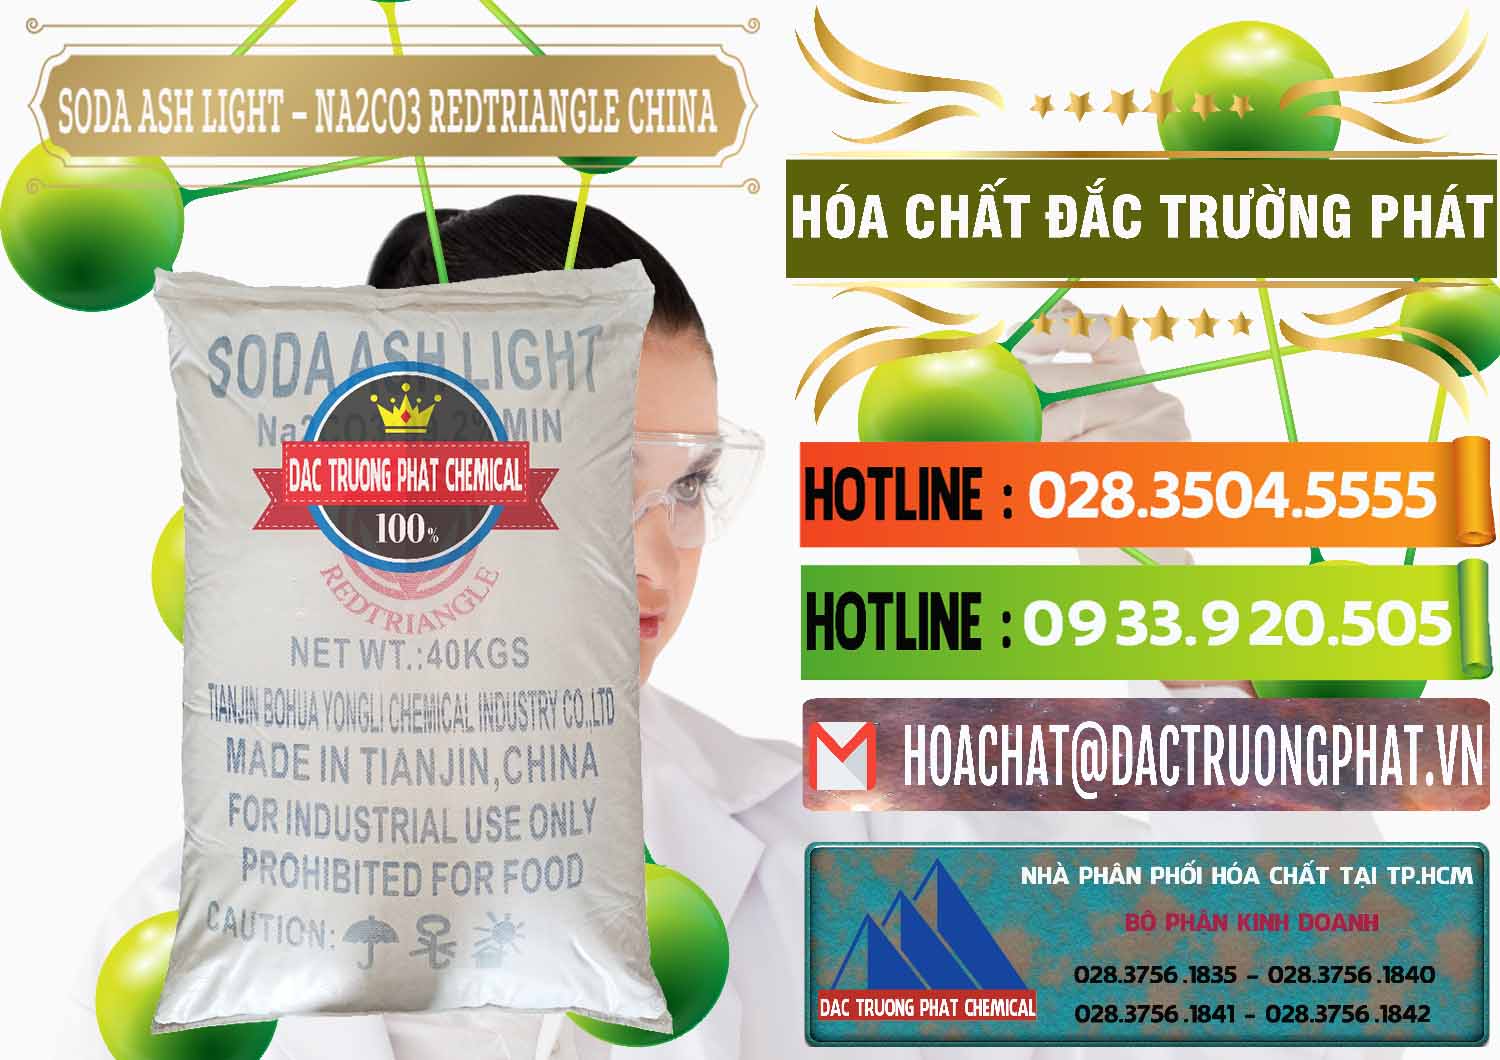 Cty cung cấp và bán Soda Ash Light - NA2CO3 Redtriangle Trung Quốc China - 0131 - Nơi chuyên bán & phân phối hóa chất tại TP.HCM - cungcaphoachat.com.vn